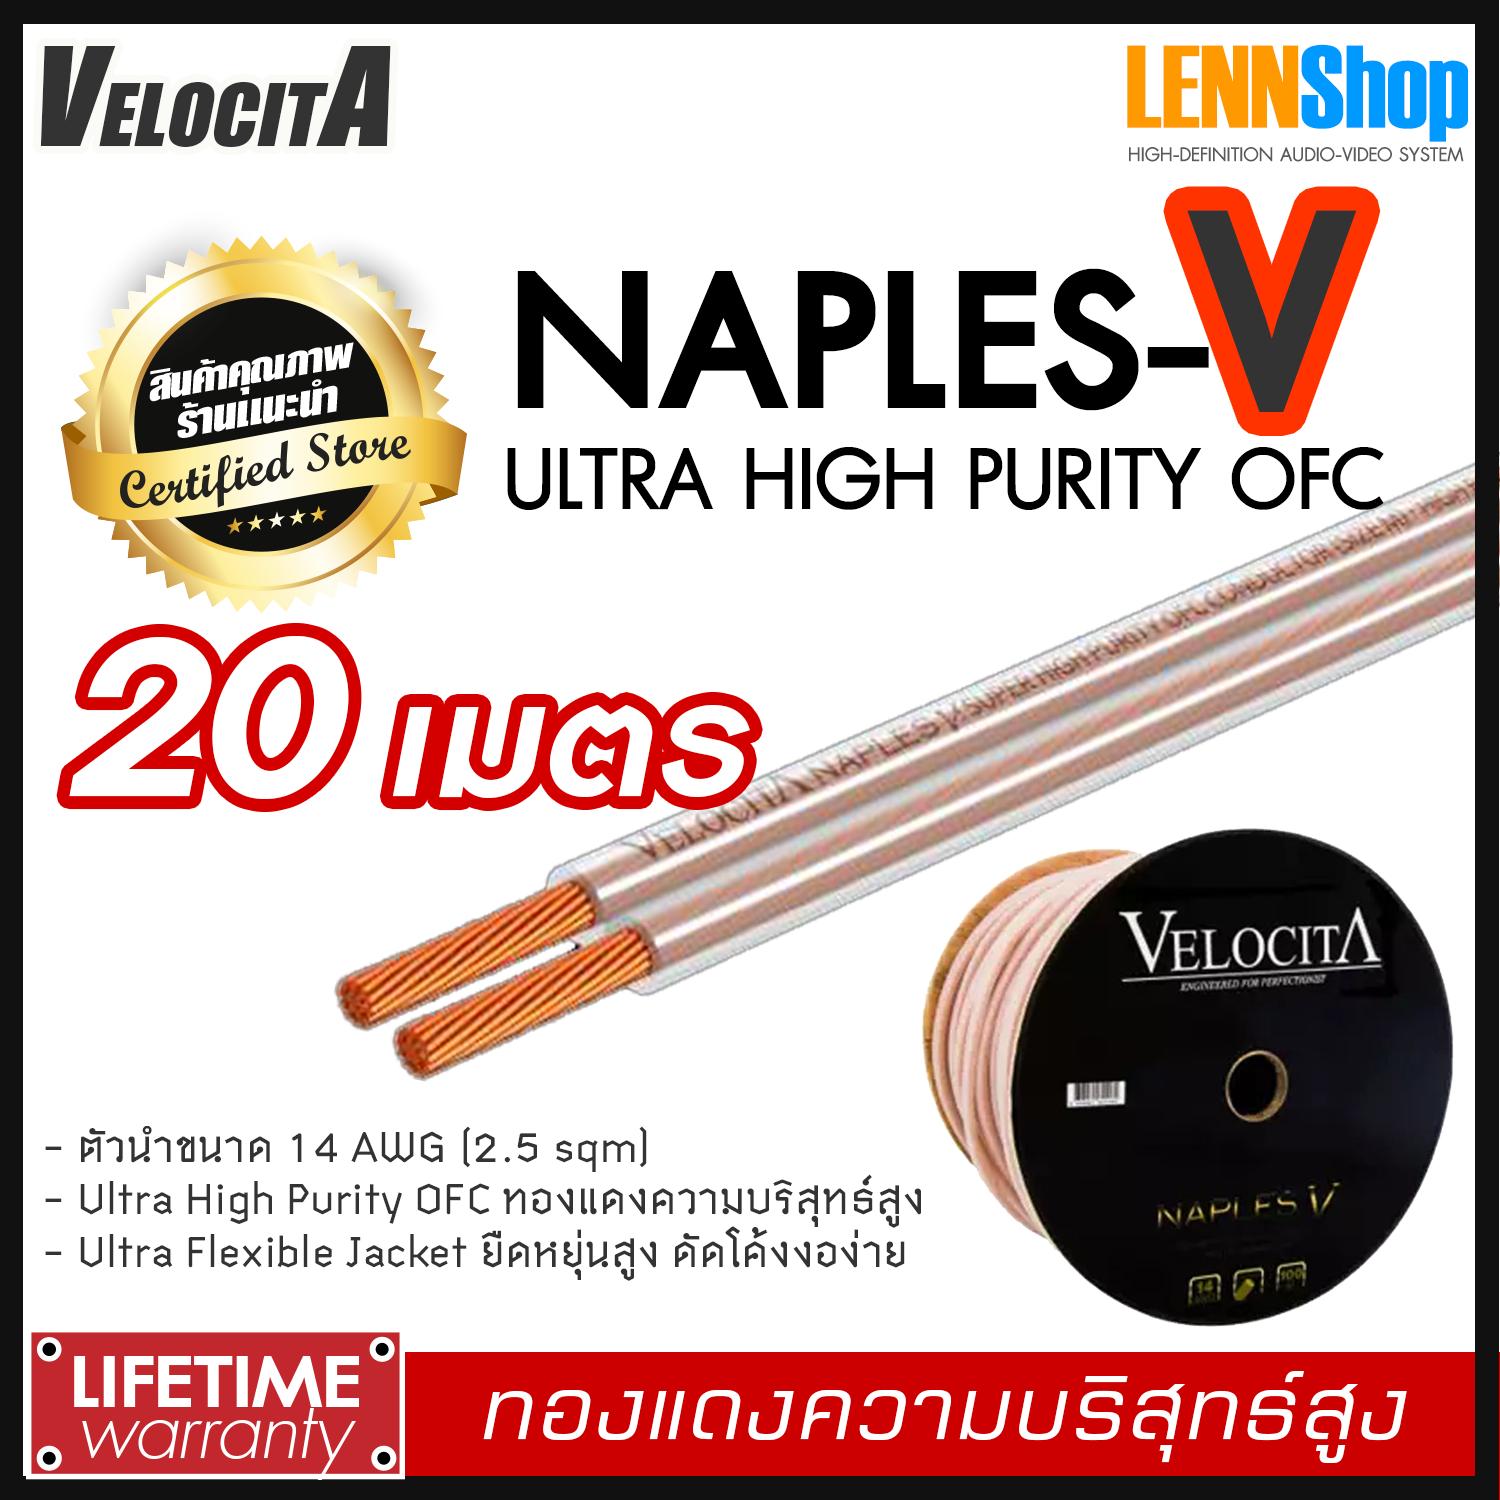 VELOCITA : NAPLES V สายลำโพง Ultra High Purity OFC ความบริสุทธ์สูง ความยาว ตั้งแต่ 1 - 100 เมตร เลือกได้หลายขนาด สินค้าของแท้ 100% จากตัวแทนจำหน่ายอย่างเป็นทางการ จำหน่ายโดย LENNSHOP / Velocita Naple V / naple V